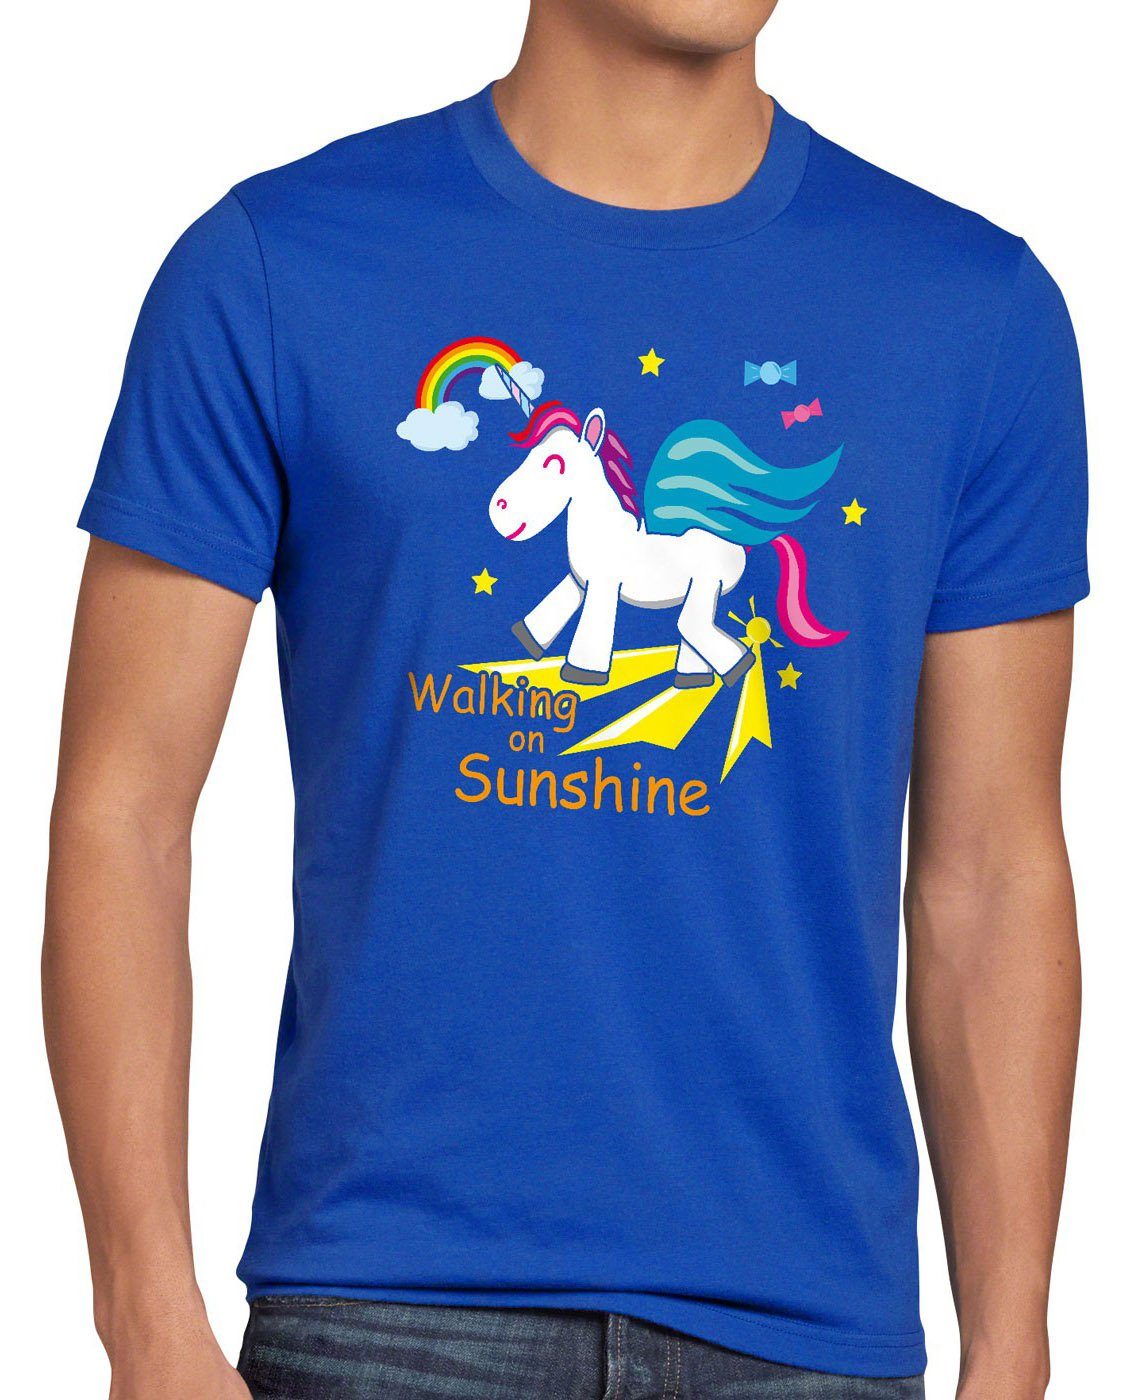 Print-Shirt Einhorn on blau Herren Regenbogen Unicorn T-Shirt Fun Sunshine Kinder Walking style3 Spruch